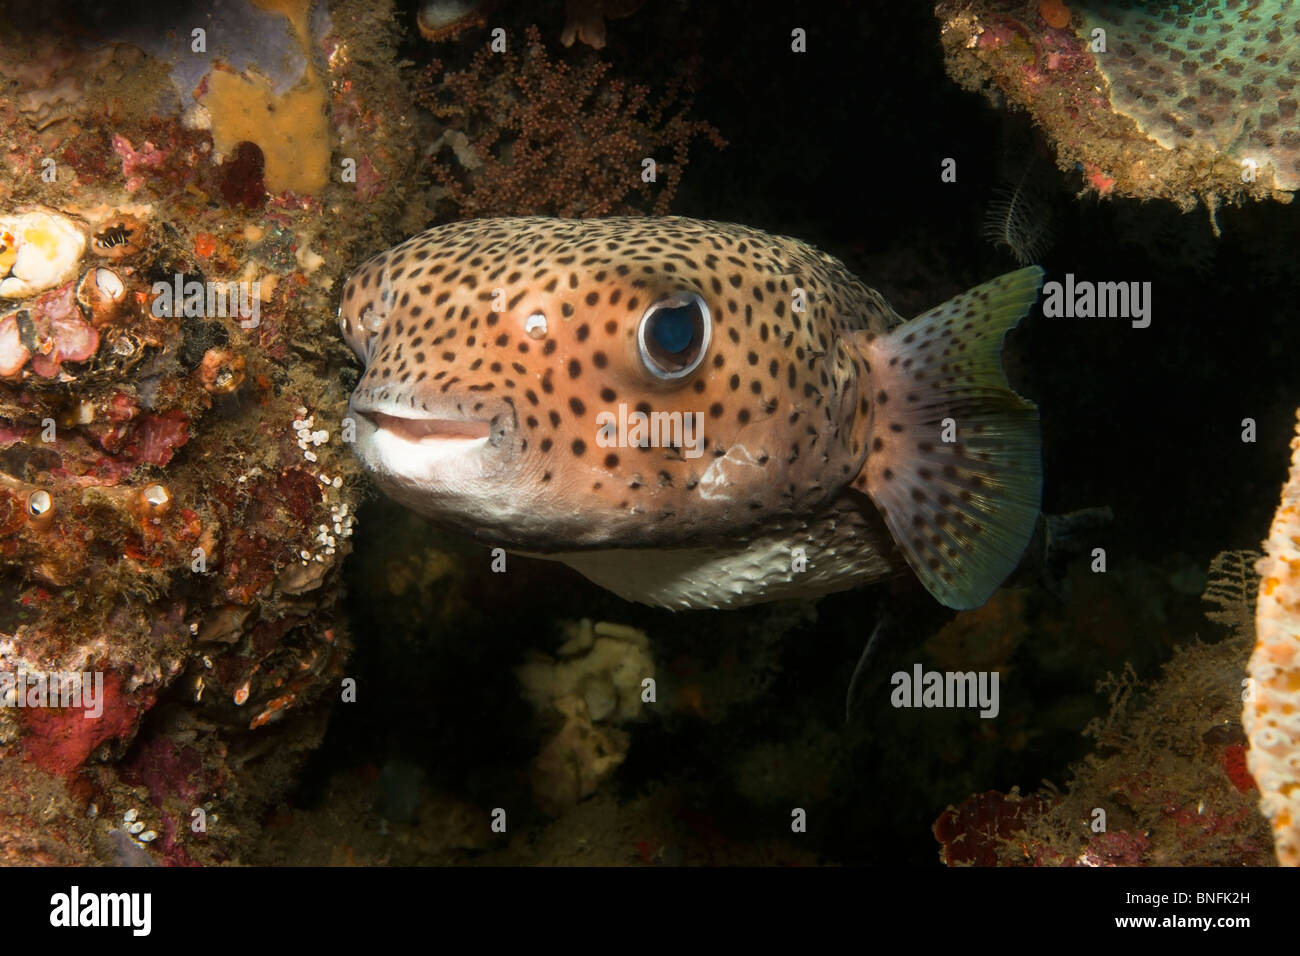 Porcupinefish (Diodon hystrix) in a sea cave Stock Photo